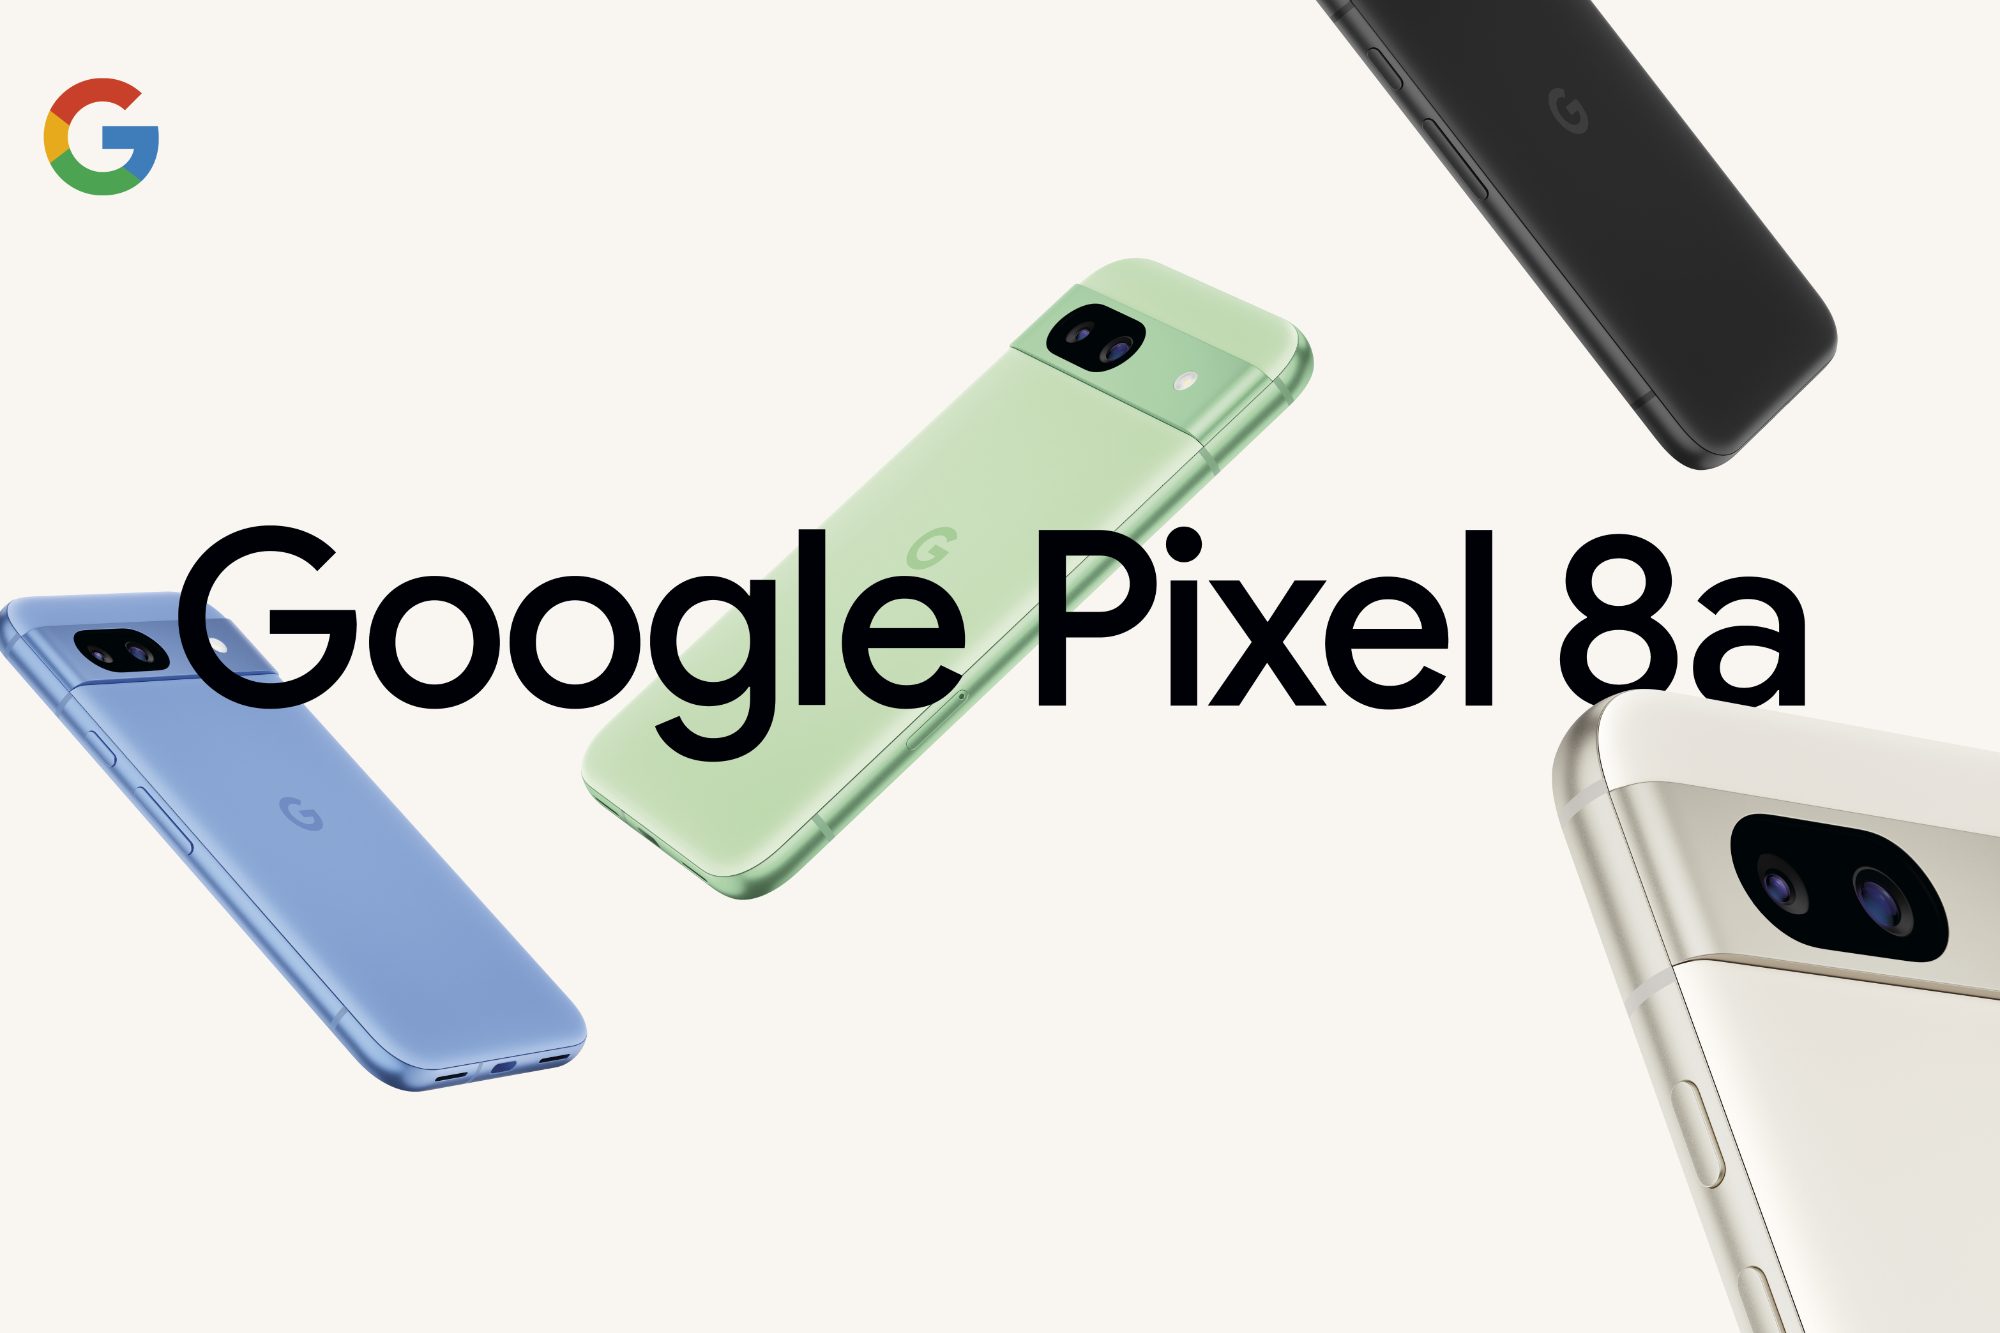 Imagem promocional do Google Pixel 8a, mostrando renderizações do telefone em todas as quatro cores.